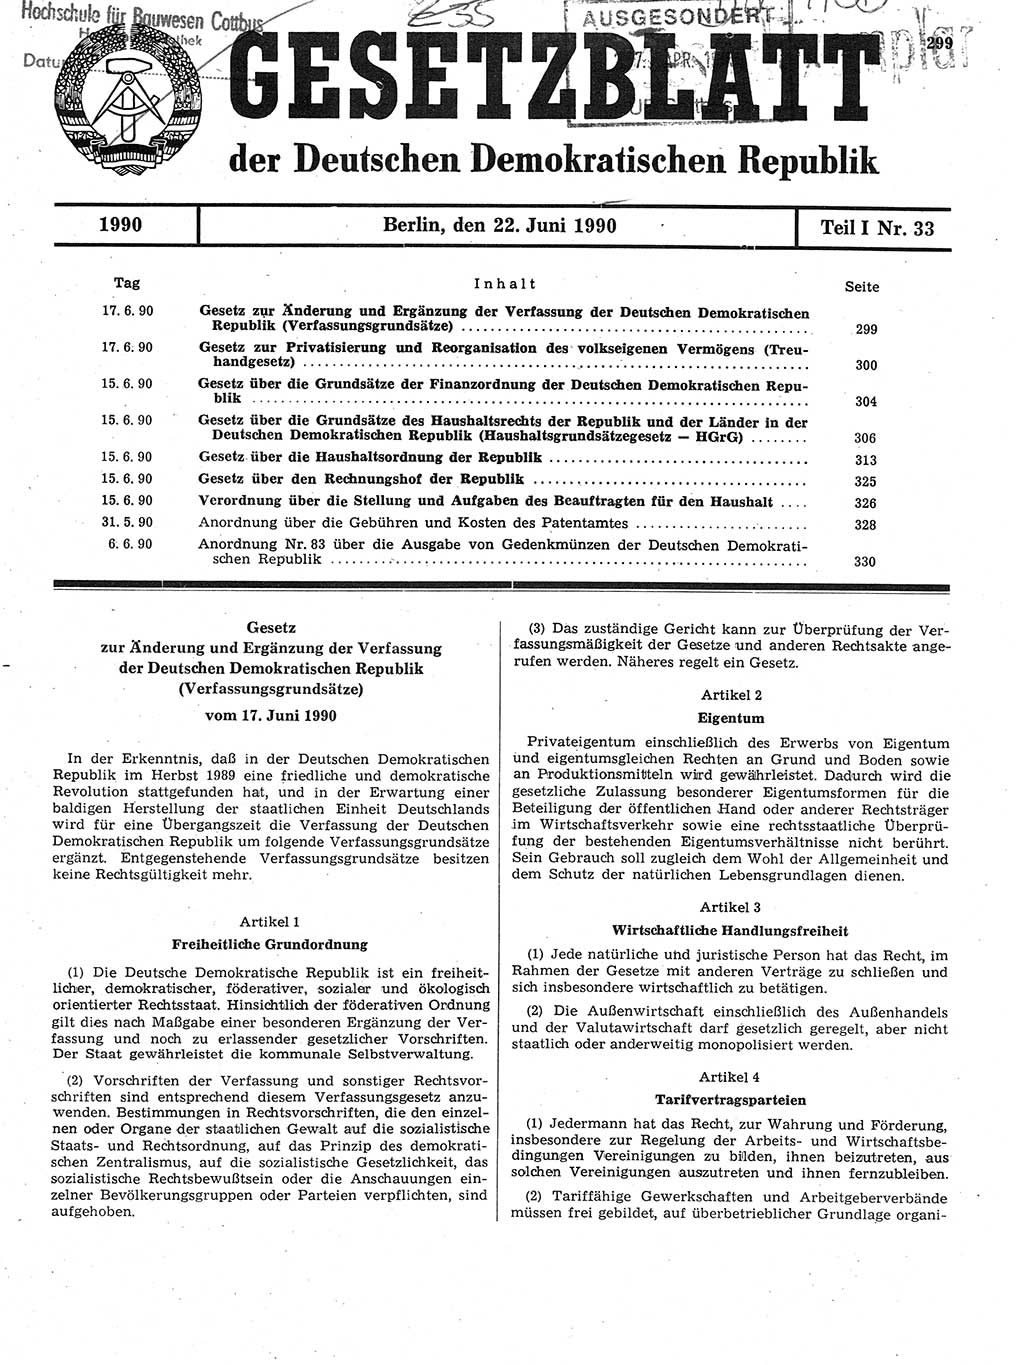 Gesetzblatt (GBl.) der Deutschen Demokratischen Republik (DDR) Teil Ⅰ 1990, Seite 299 (GBl. DDR Ⅰ 1990, S. 299)